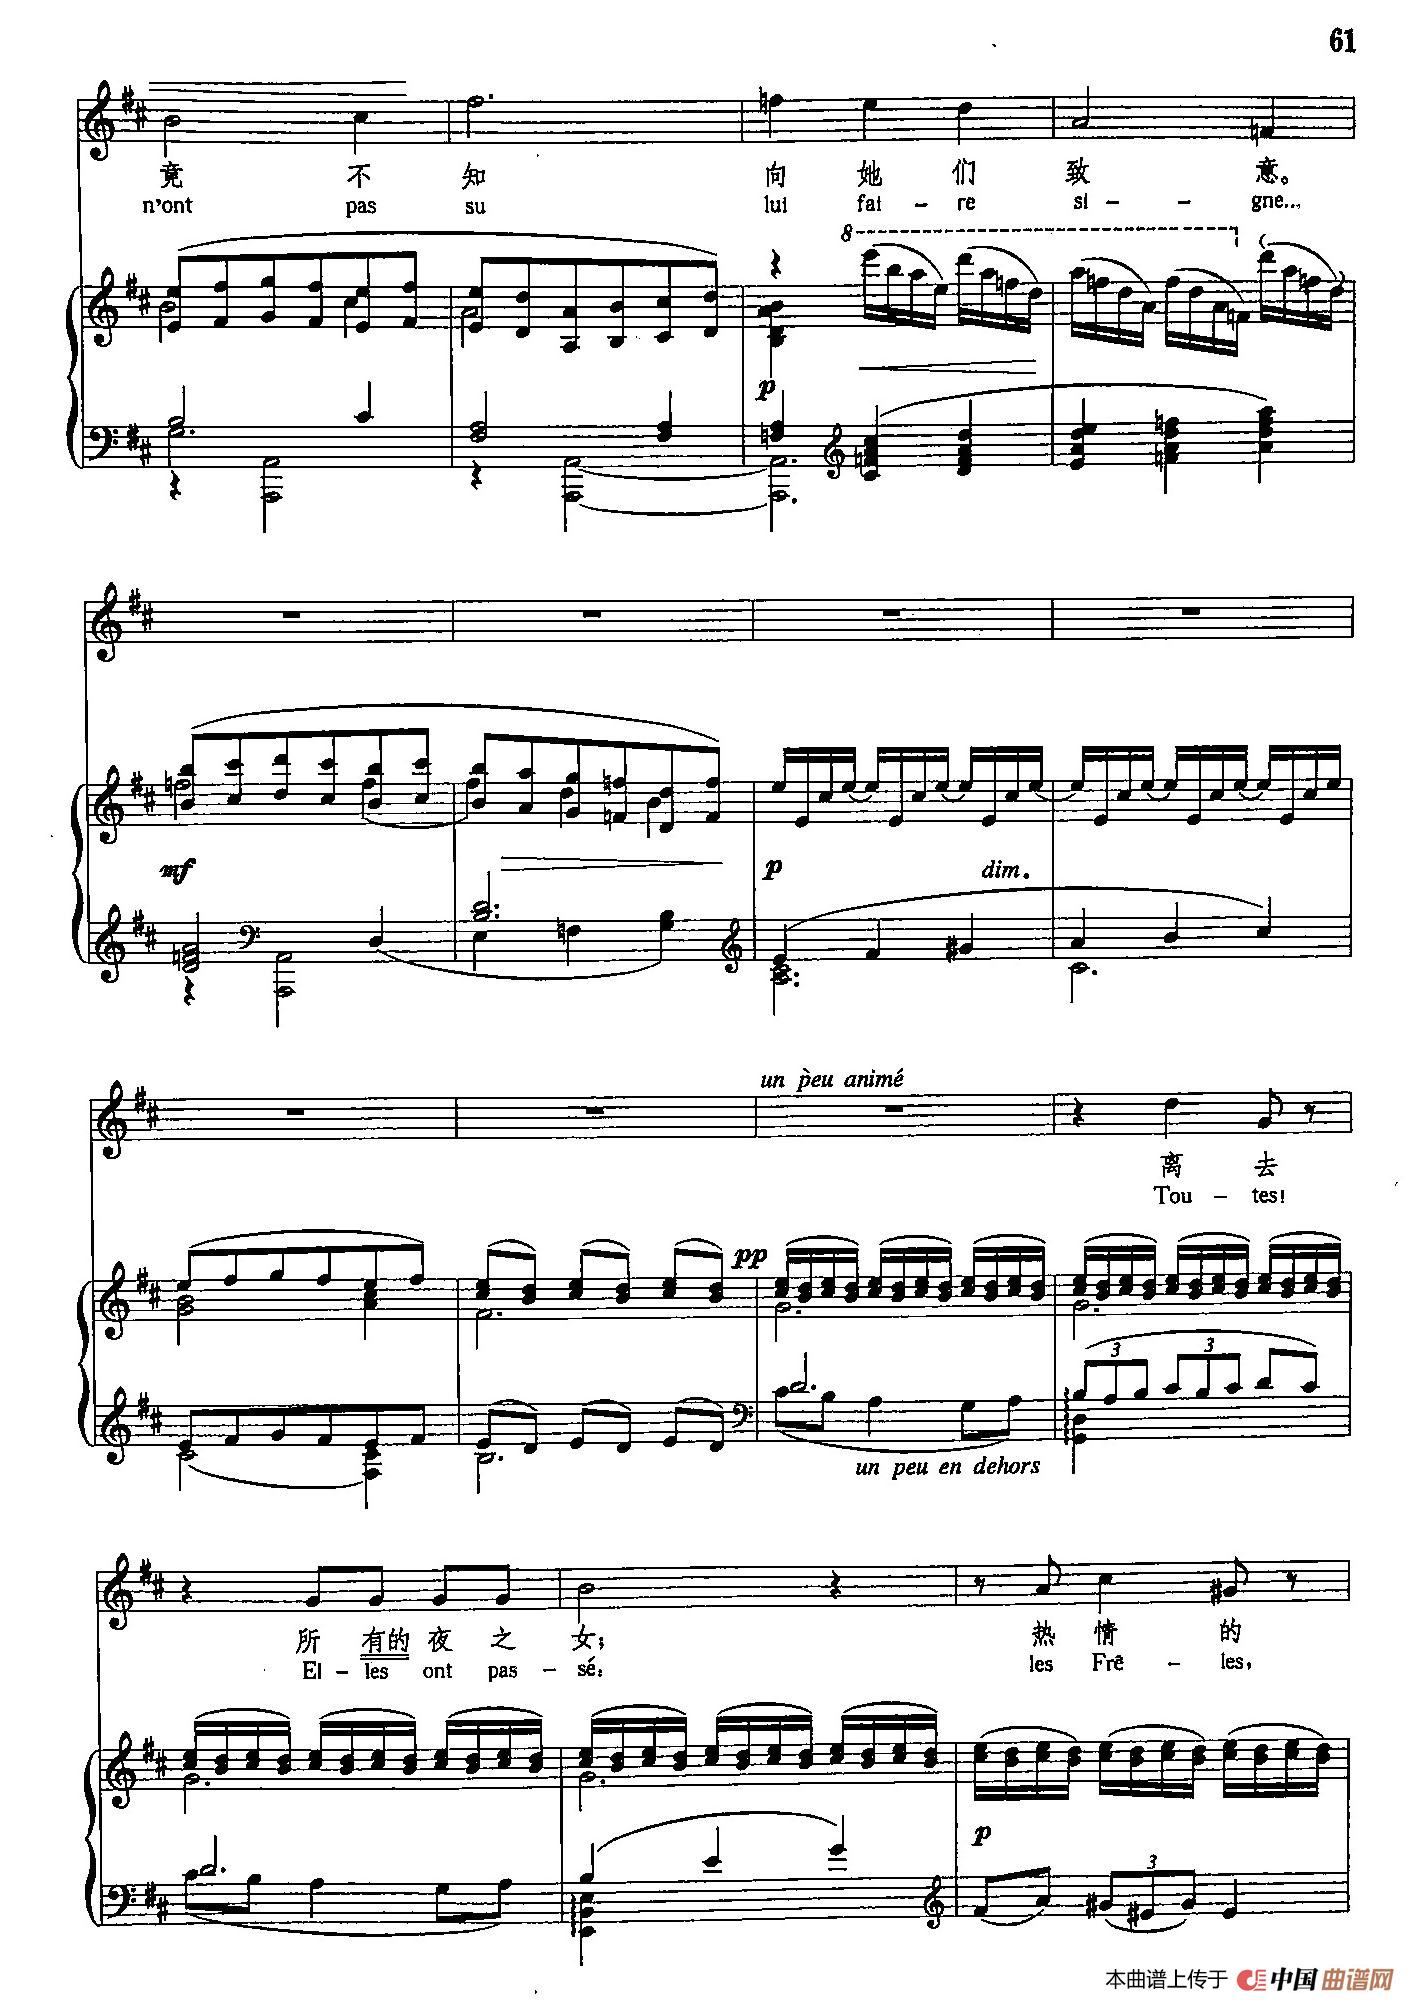 声乐教学曲库5-12梦（正谱）(1)_原文件名：声乐教学曲库5-12梦（正谱）3.jpg